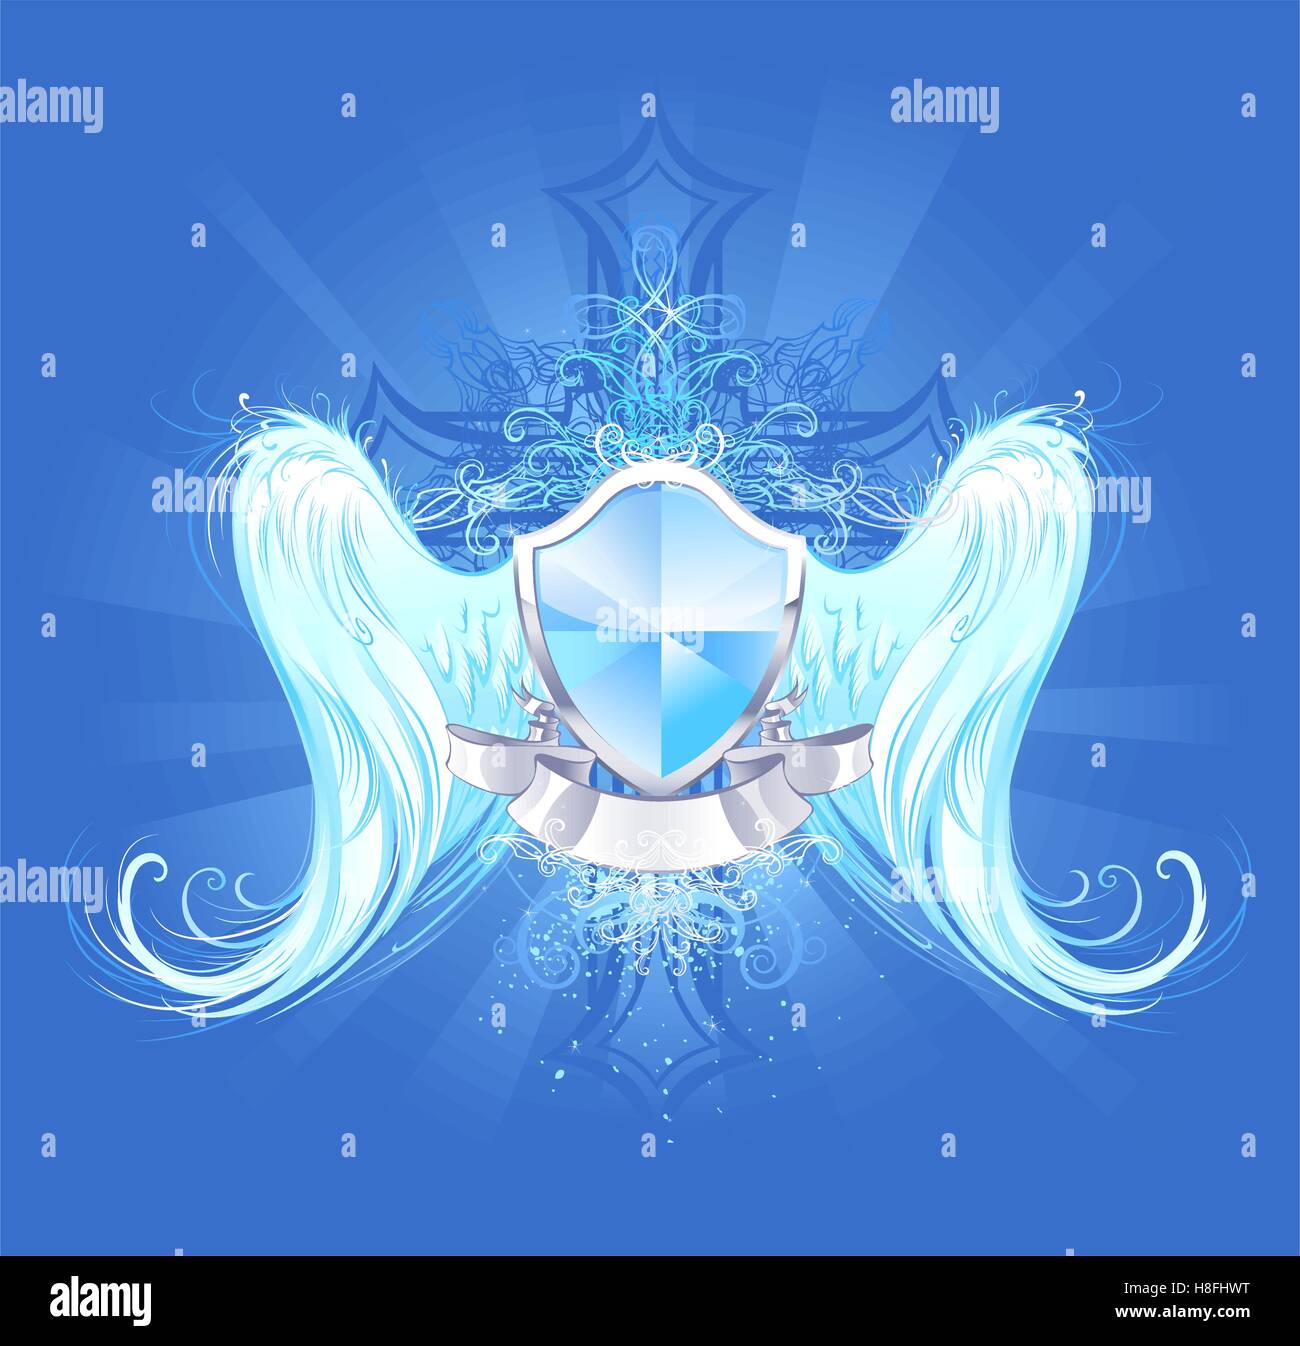 Kristallklares blaues Schild mit weißen Engelsflügel künstlerisch in blau leuchtenden Hintergrund, verziert mit einem Kreuz gemalt Stock Vektor